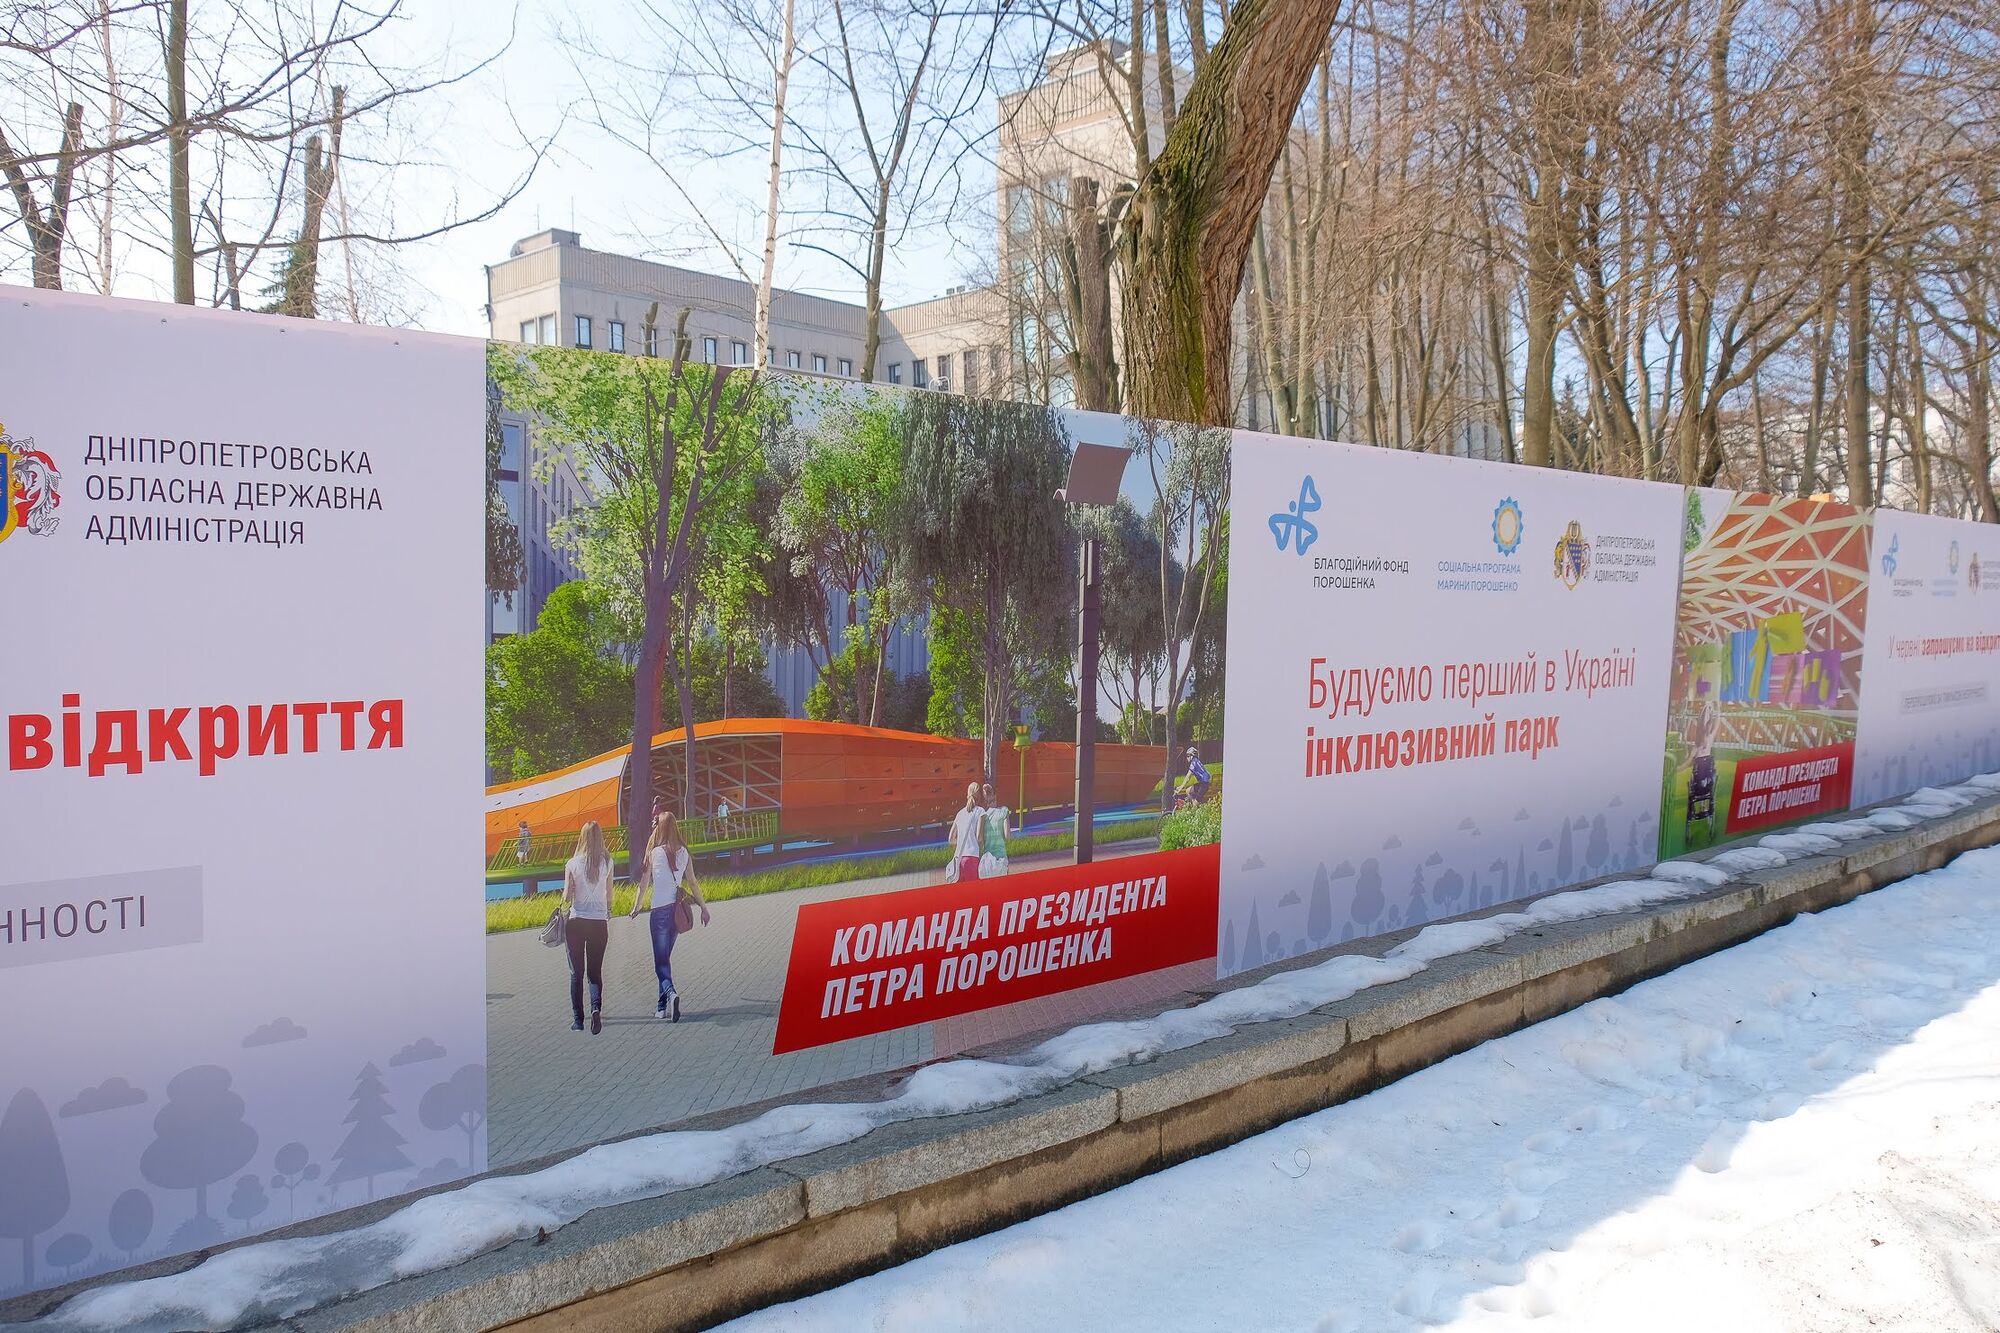 Фонд Порошенко и Днепропетровская ОГА возводят первый инклюзивный парк - Резниченко